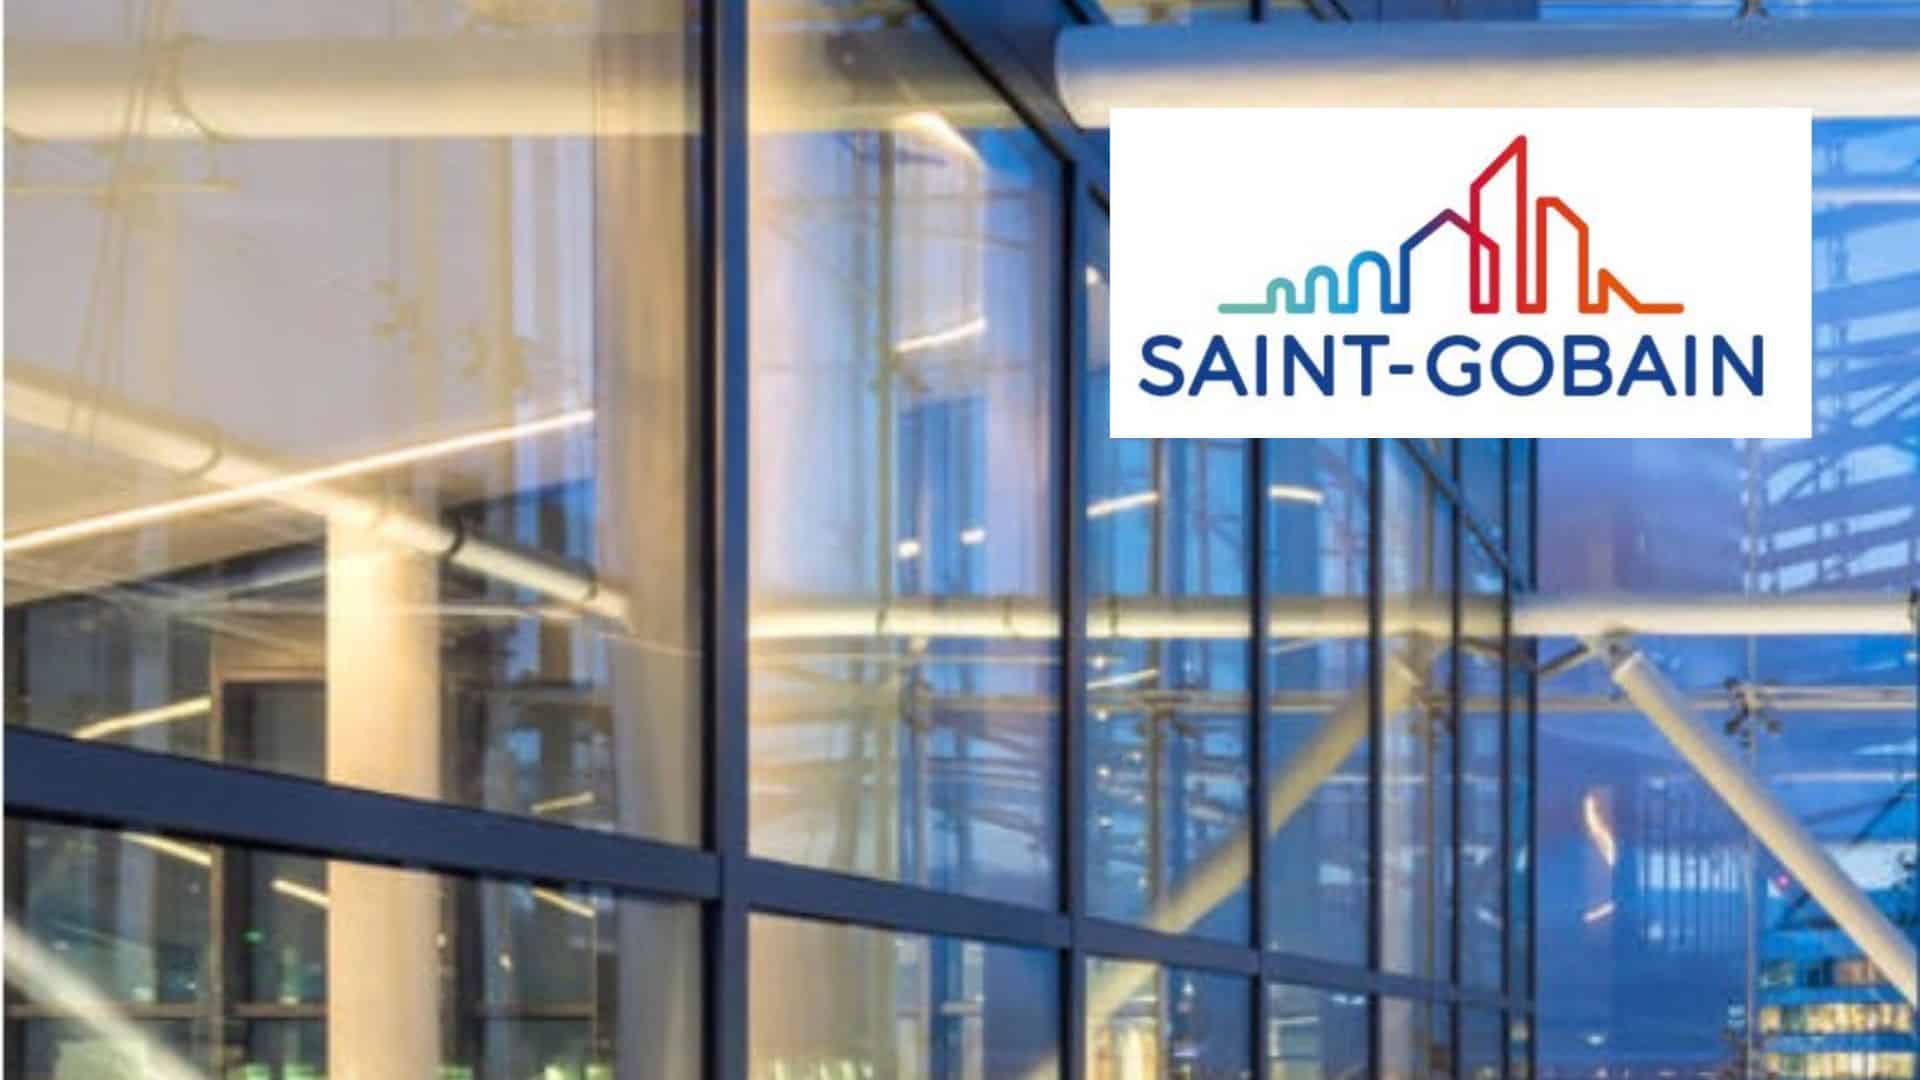 SAINT-GOBAIN GLASS lance la première gamme de verre BAS CARBONE